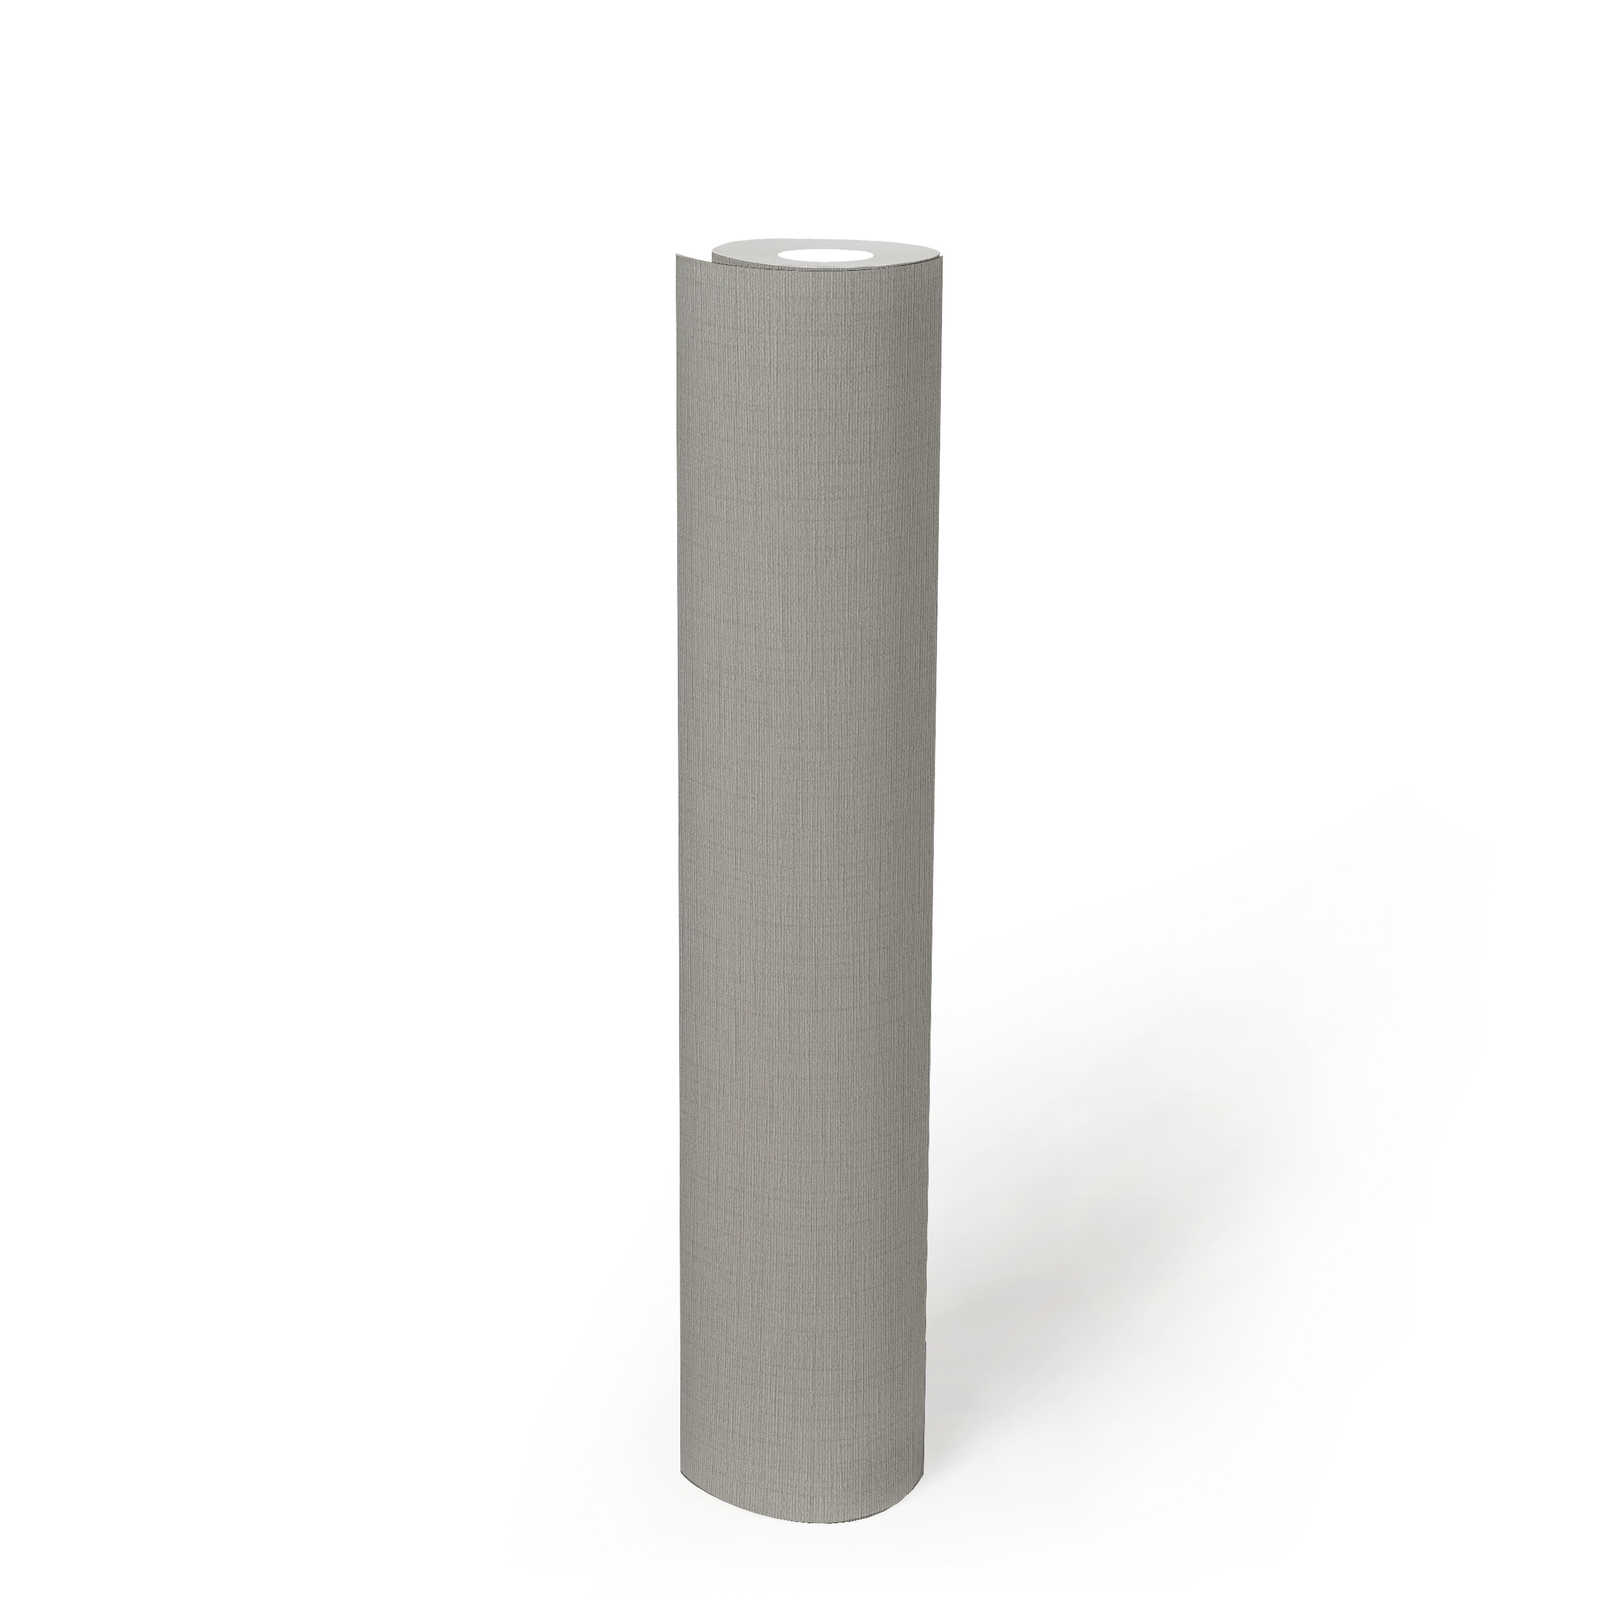             Papel pintado de aspecto de lino no tejido en color gris claro - gris
        